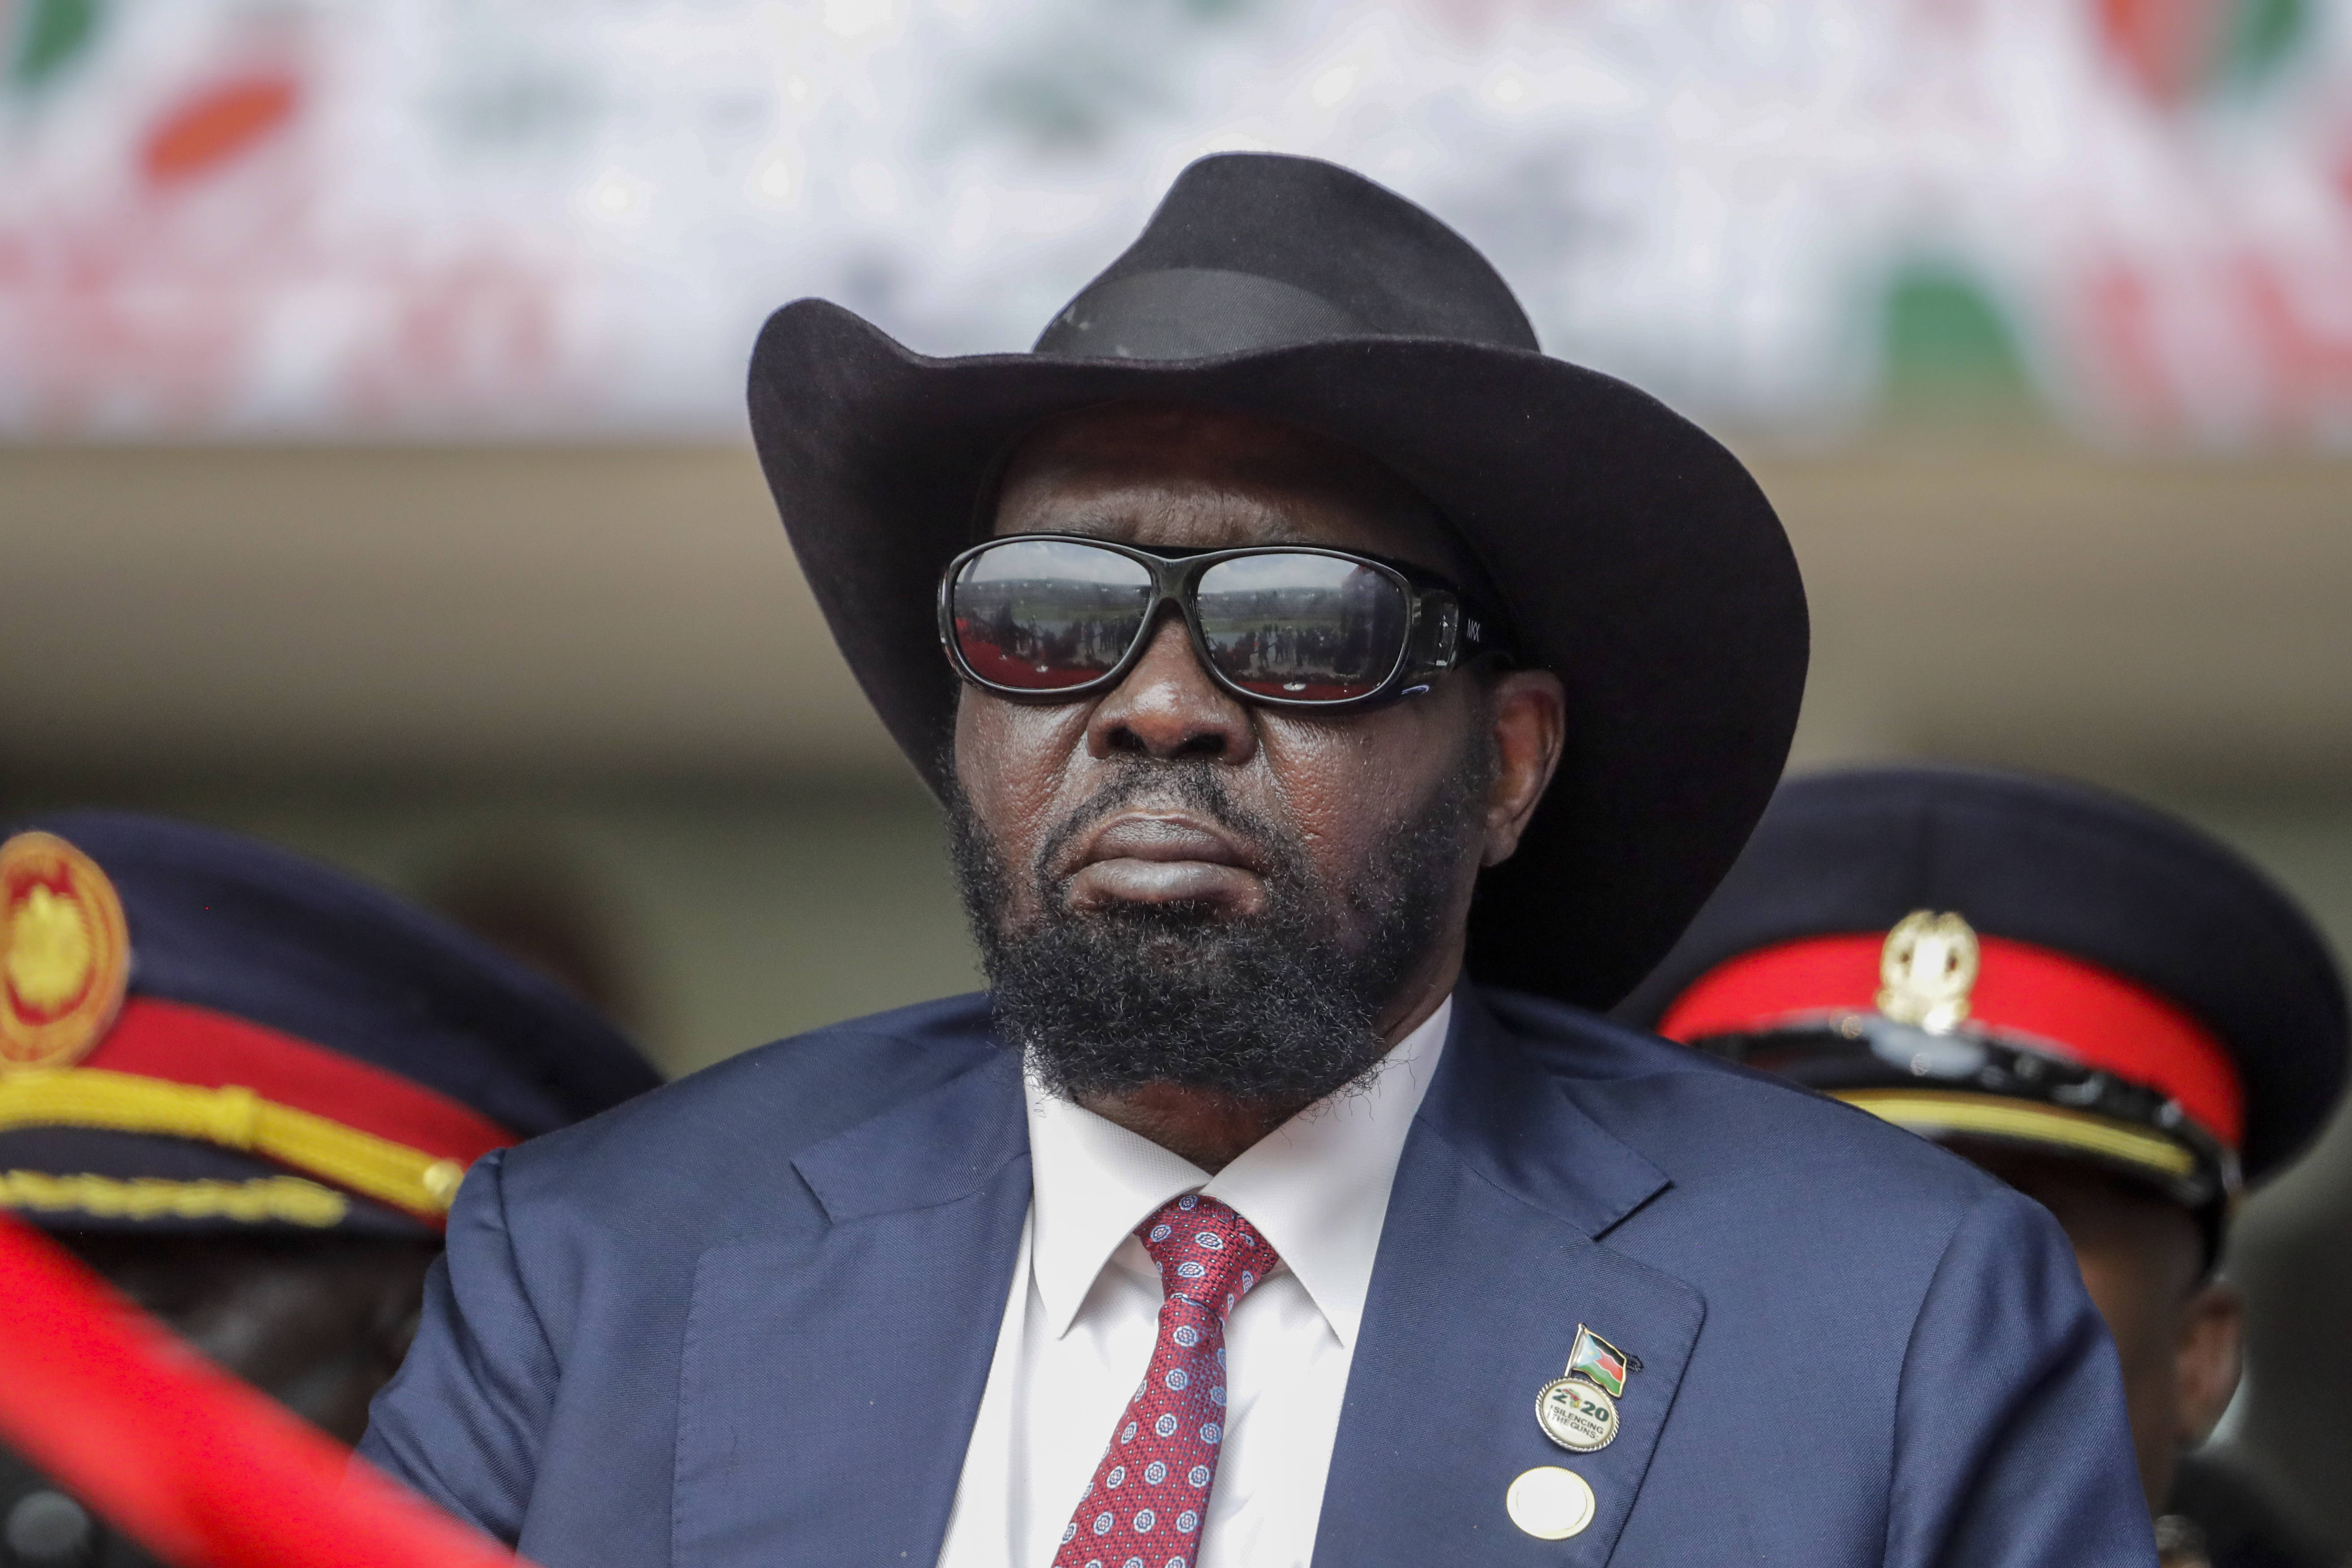 Seks journalister i Sør-Sudans kringkasting er pågrepet etter at en video som viser at president Salva Kiir tisser i buksa, ble spredt i sosiale medier. Foto: AP / NTB